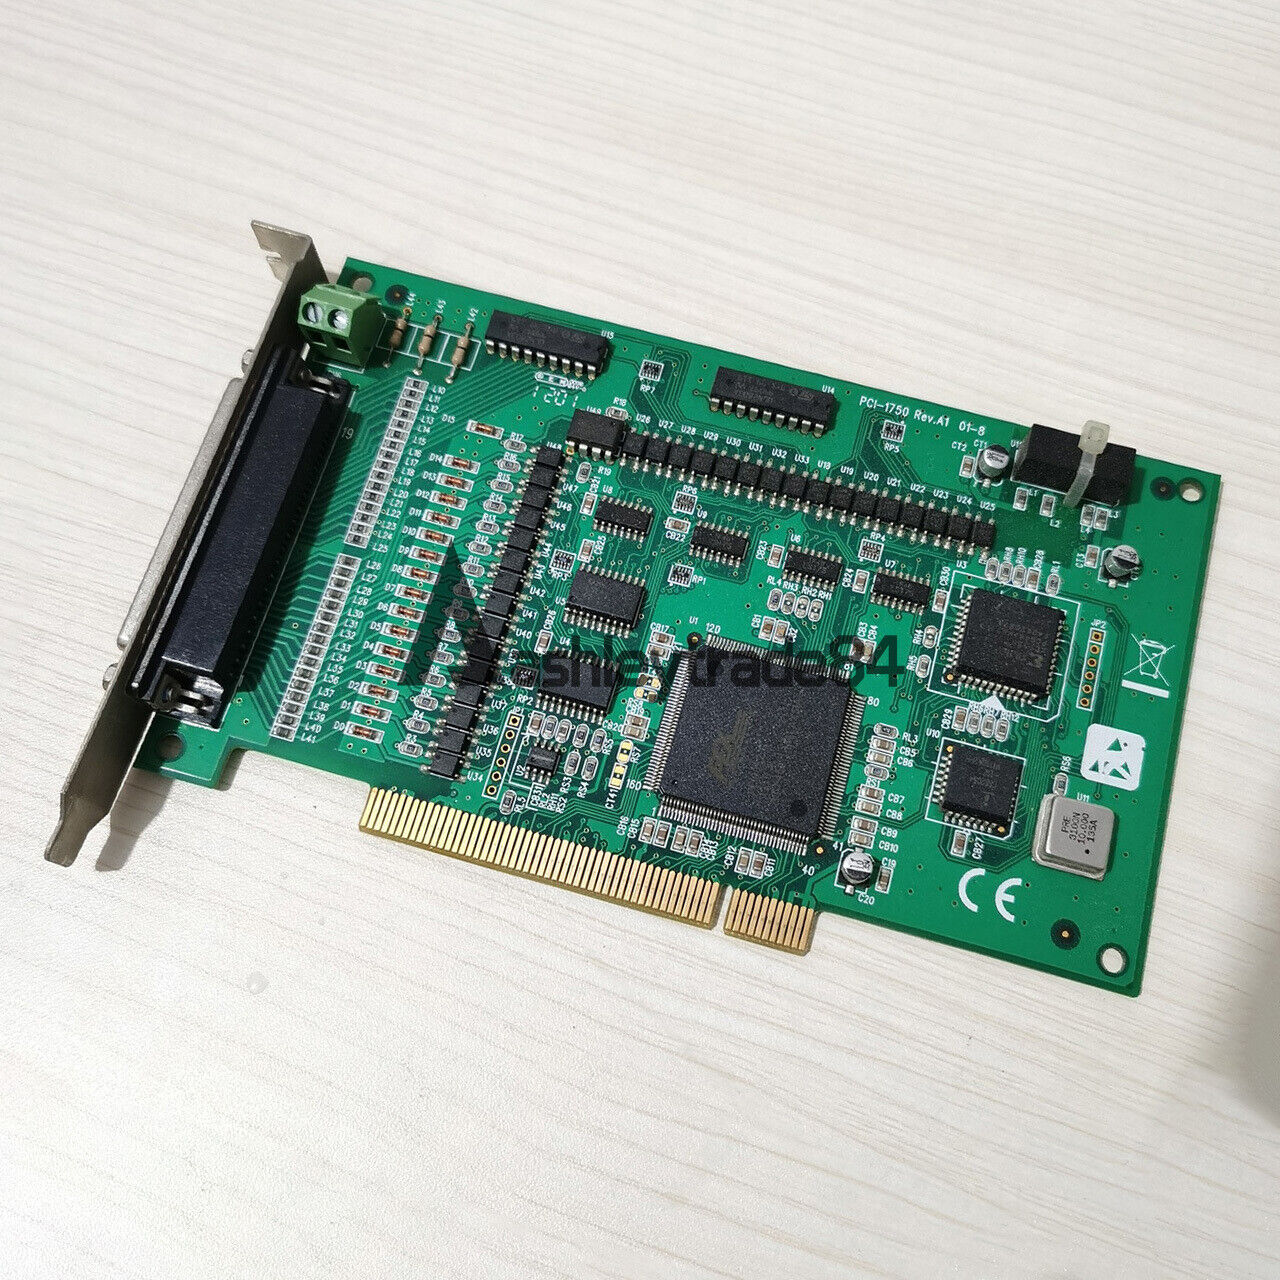 Used 1PCS Advantech PCI-1750 REV.A1 01-8 Tested